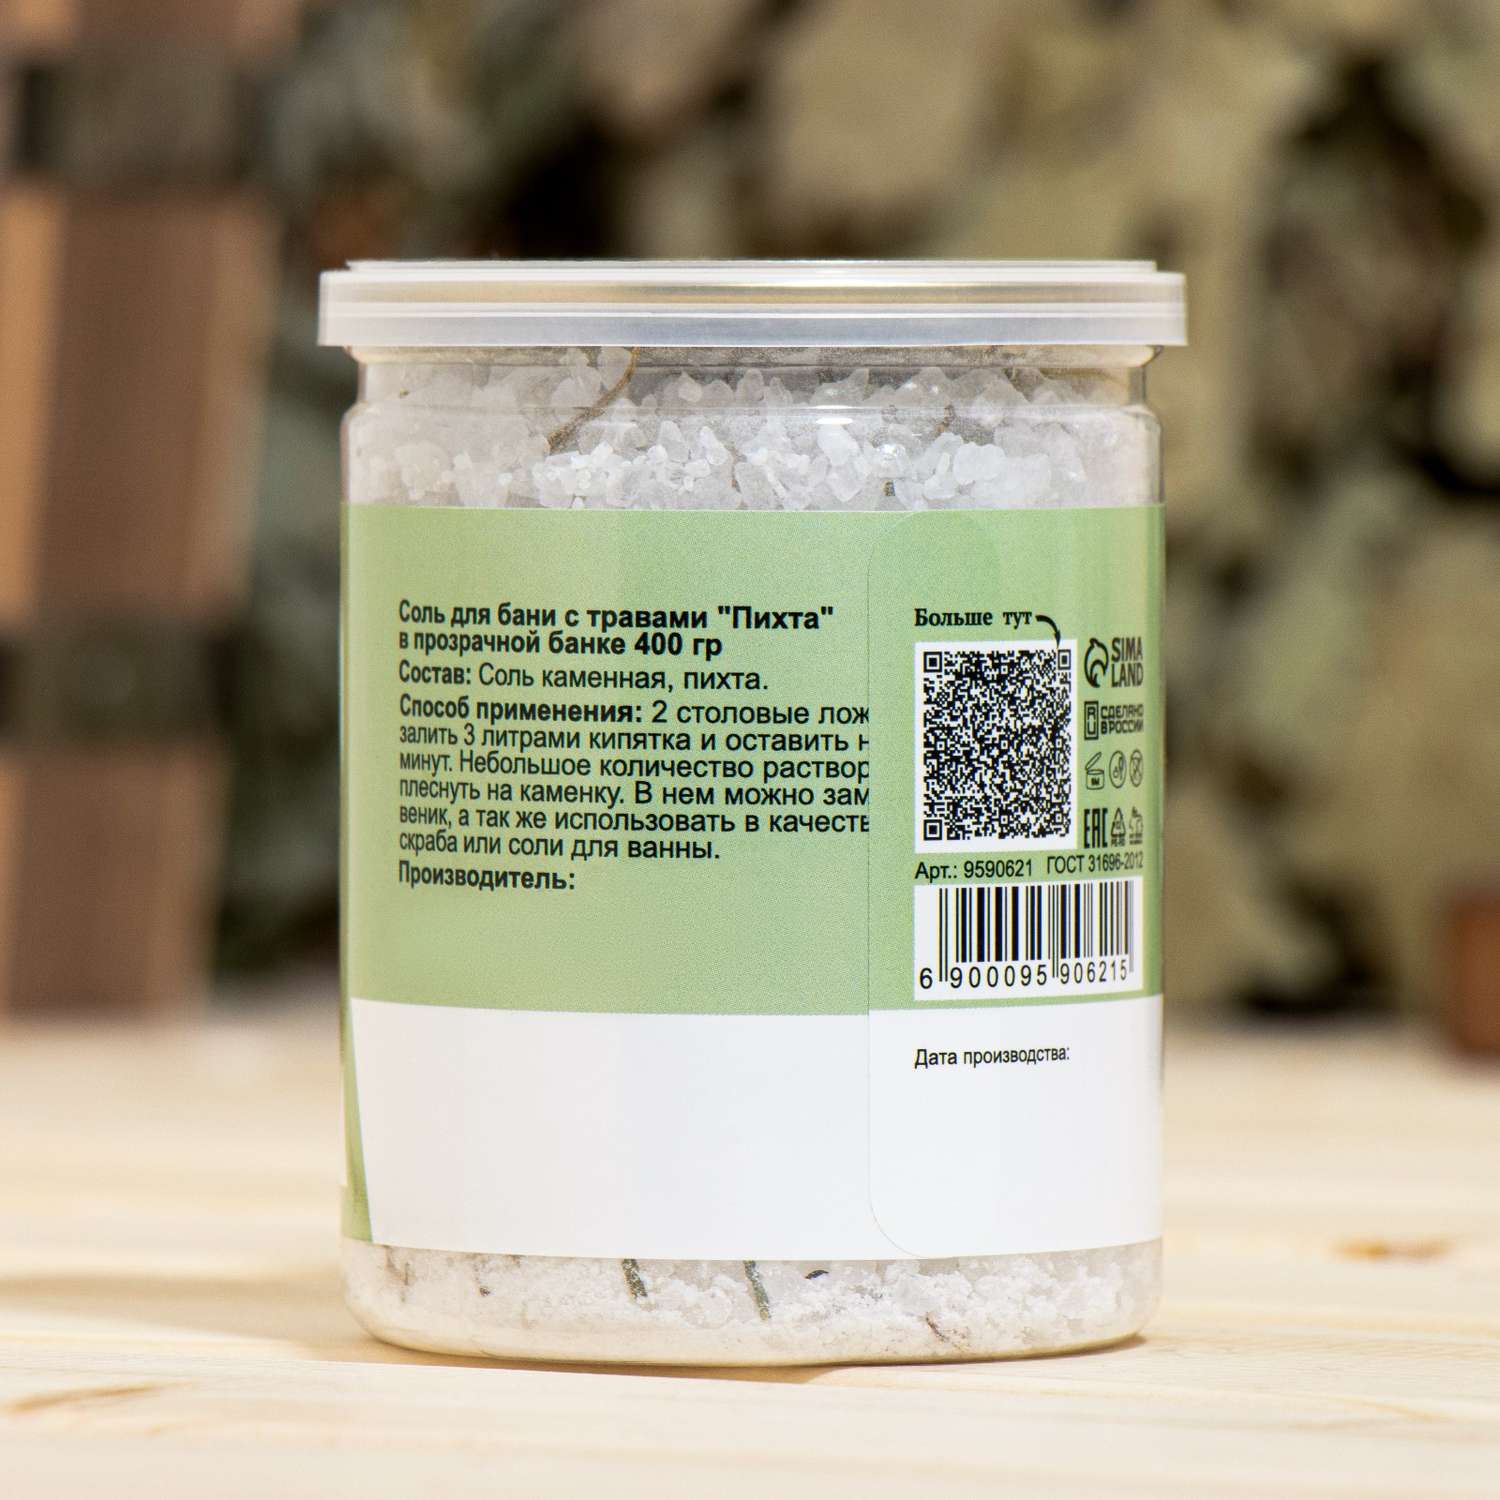 Соль для бани Добропаровъ с травами «Пихта» в прозрачной банке 400 гр - фото 3